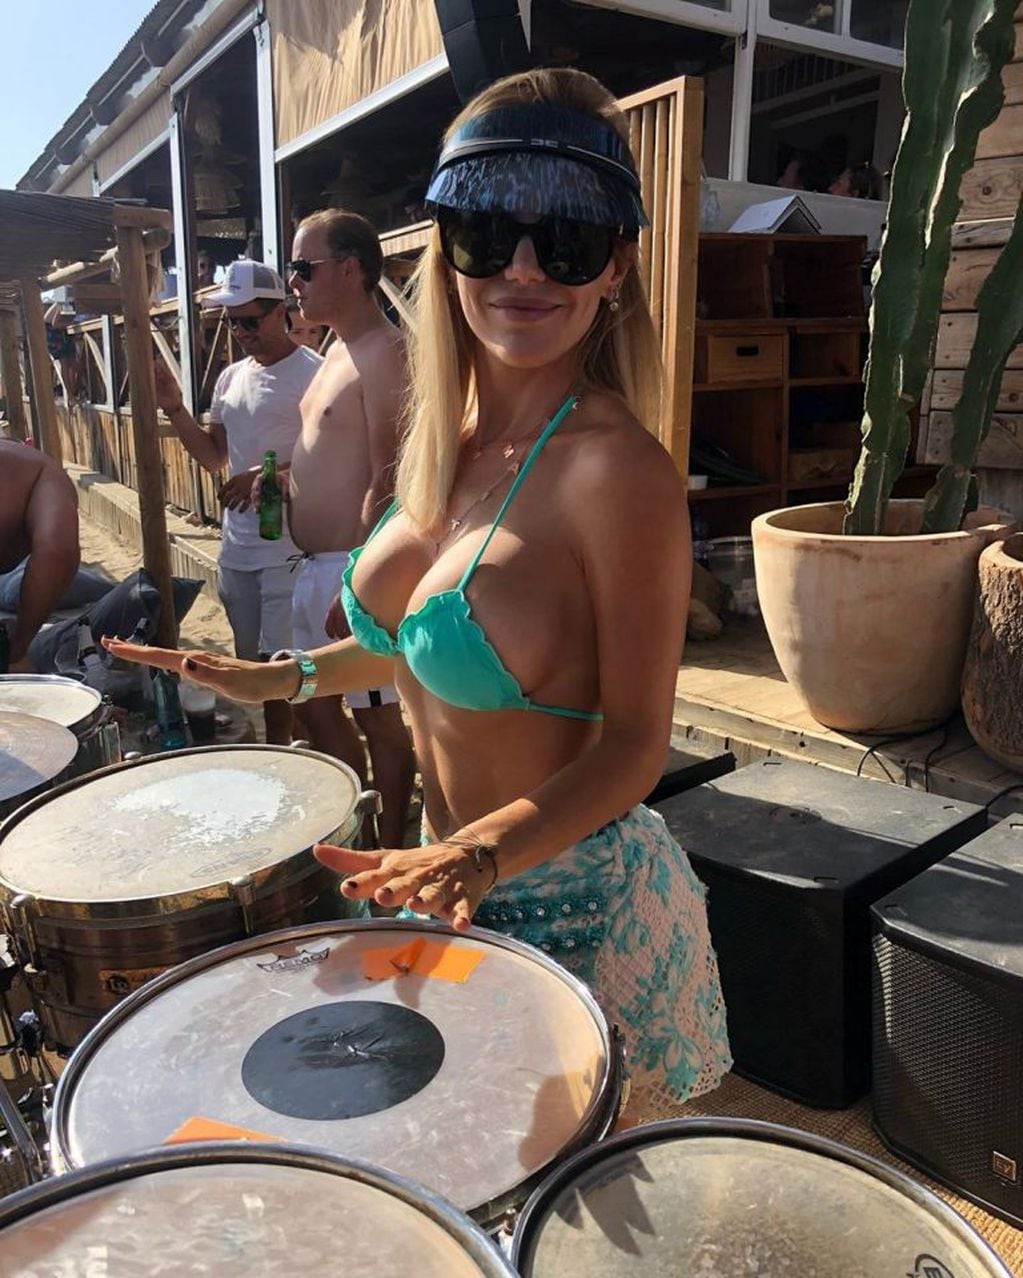 Evangelina Anderson tocó los tambores en la playa (Foto: Instagram/ evangelinaanderson)